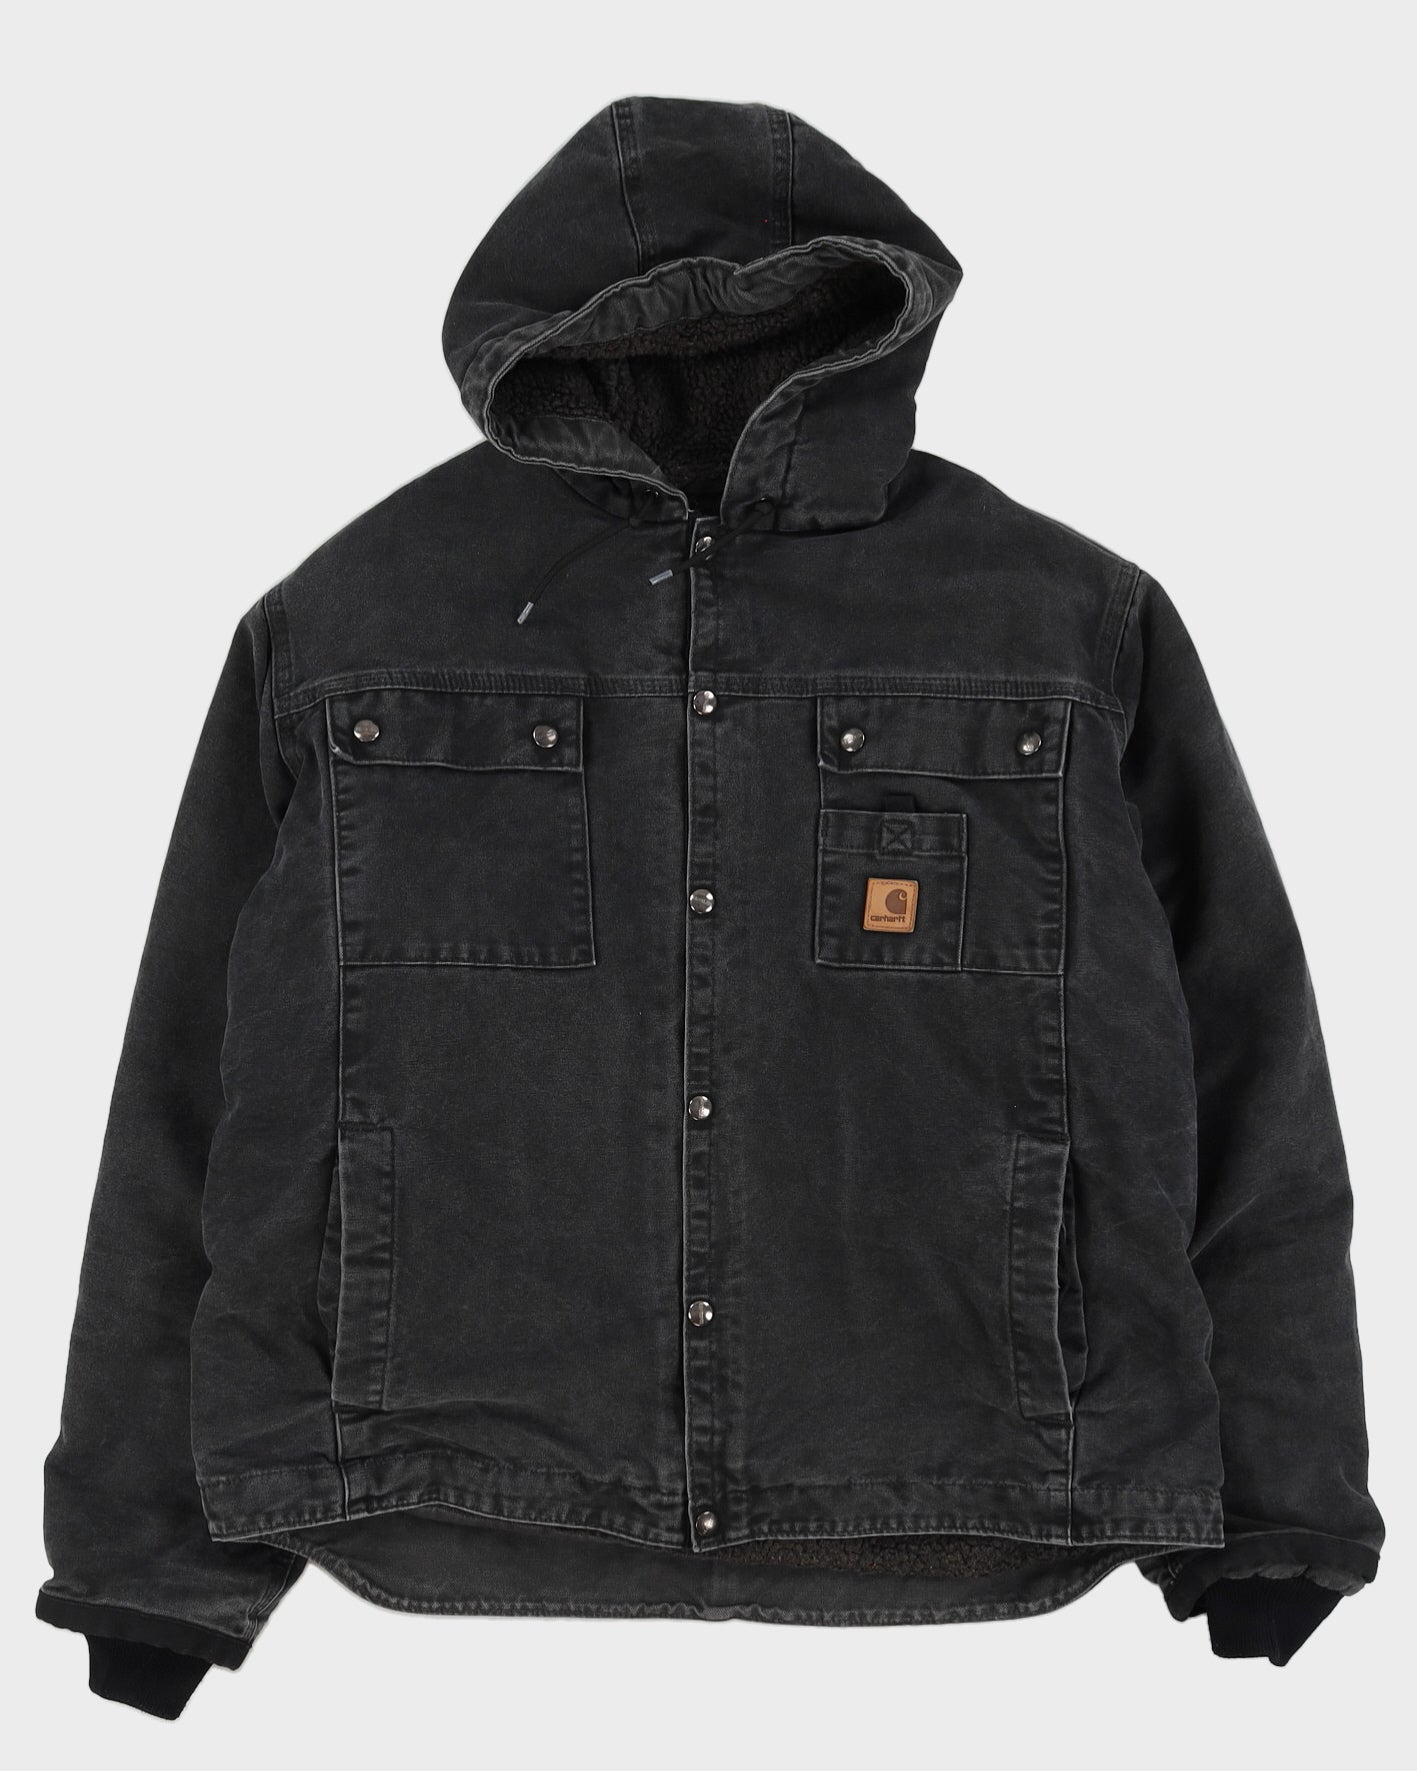 00s Carhartt Black Workwear Hooded Fleece Lined Jacket - L